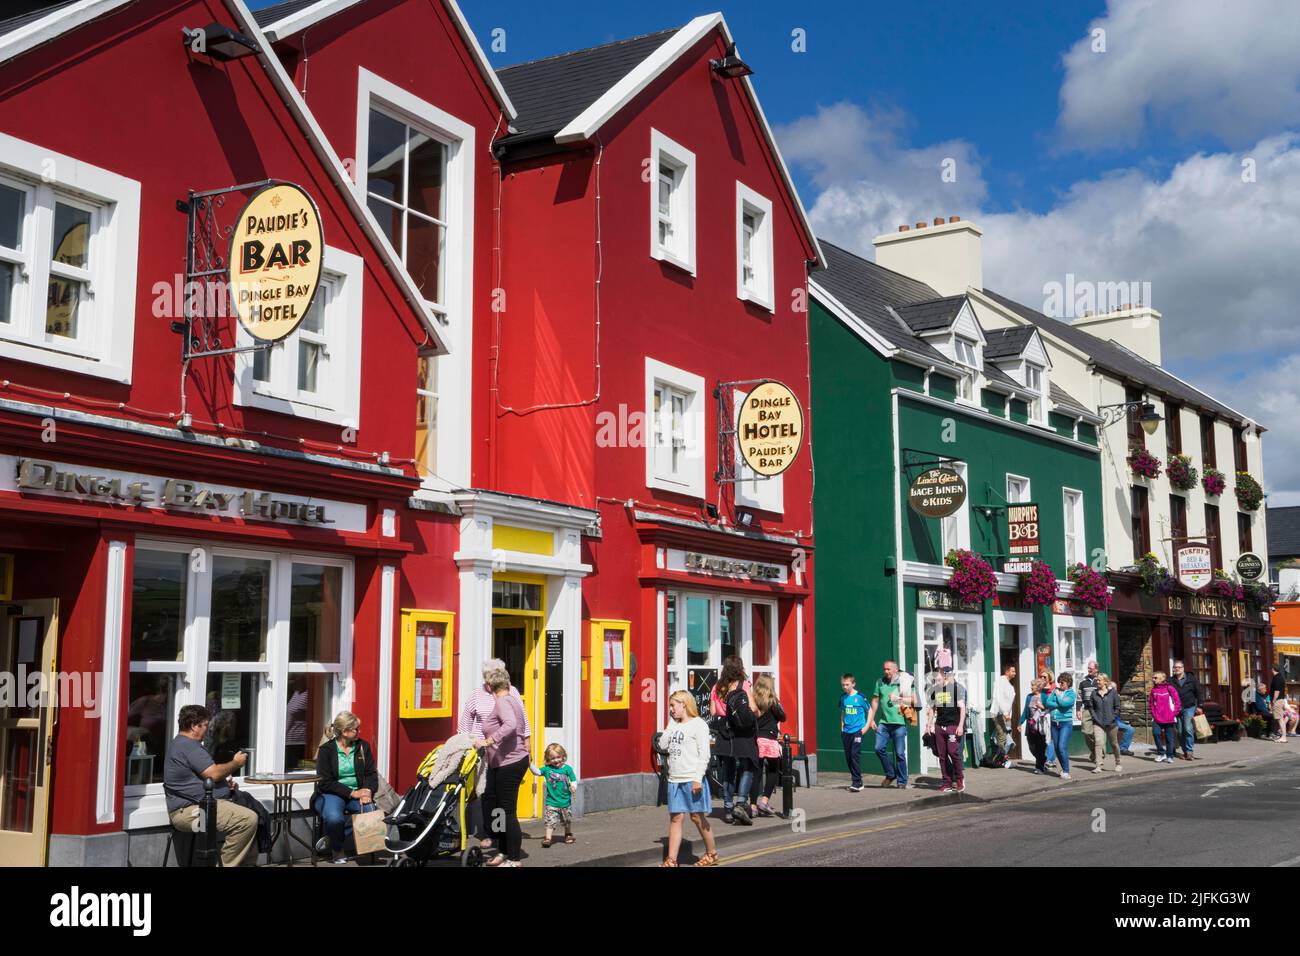 Blick auf eine Straße in der irischen Touristenstadt Dingle im Sommer, mit Pub und Hotel im Vordergrund und typischen Häusern in roten und grünen Farben. Stockfoto